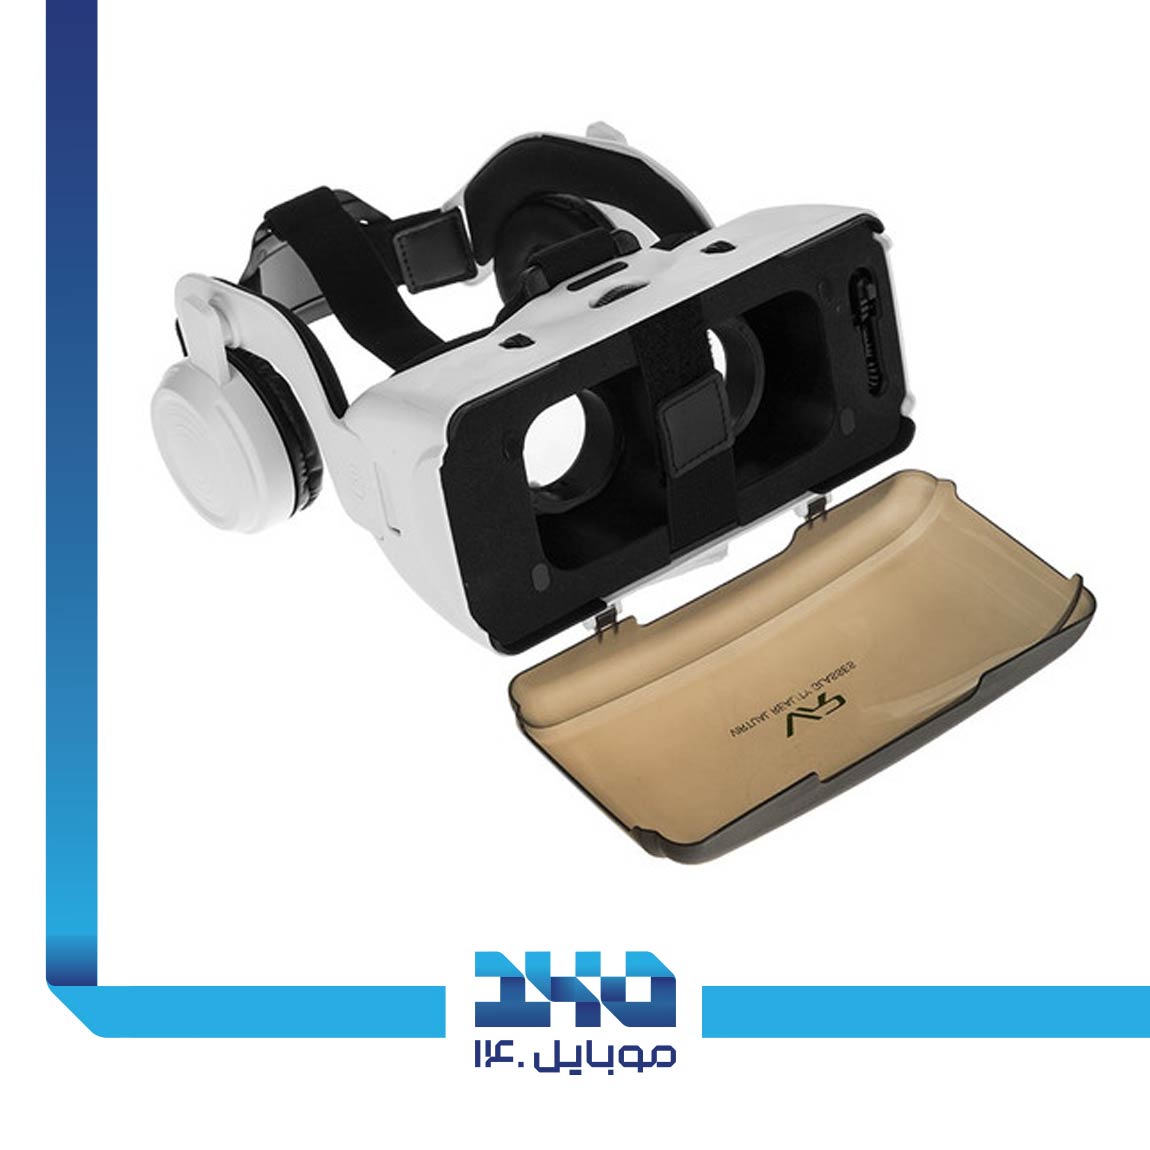 ShineCon SC-G06E Virtual Reality Headset 2